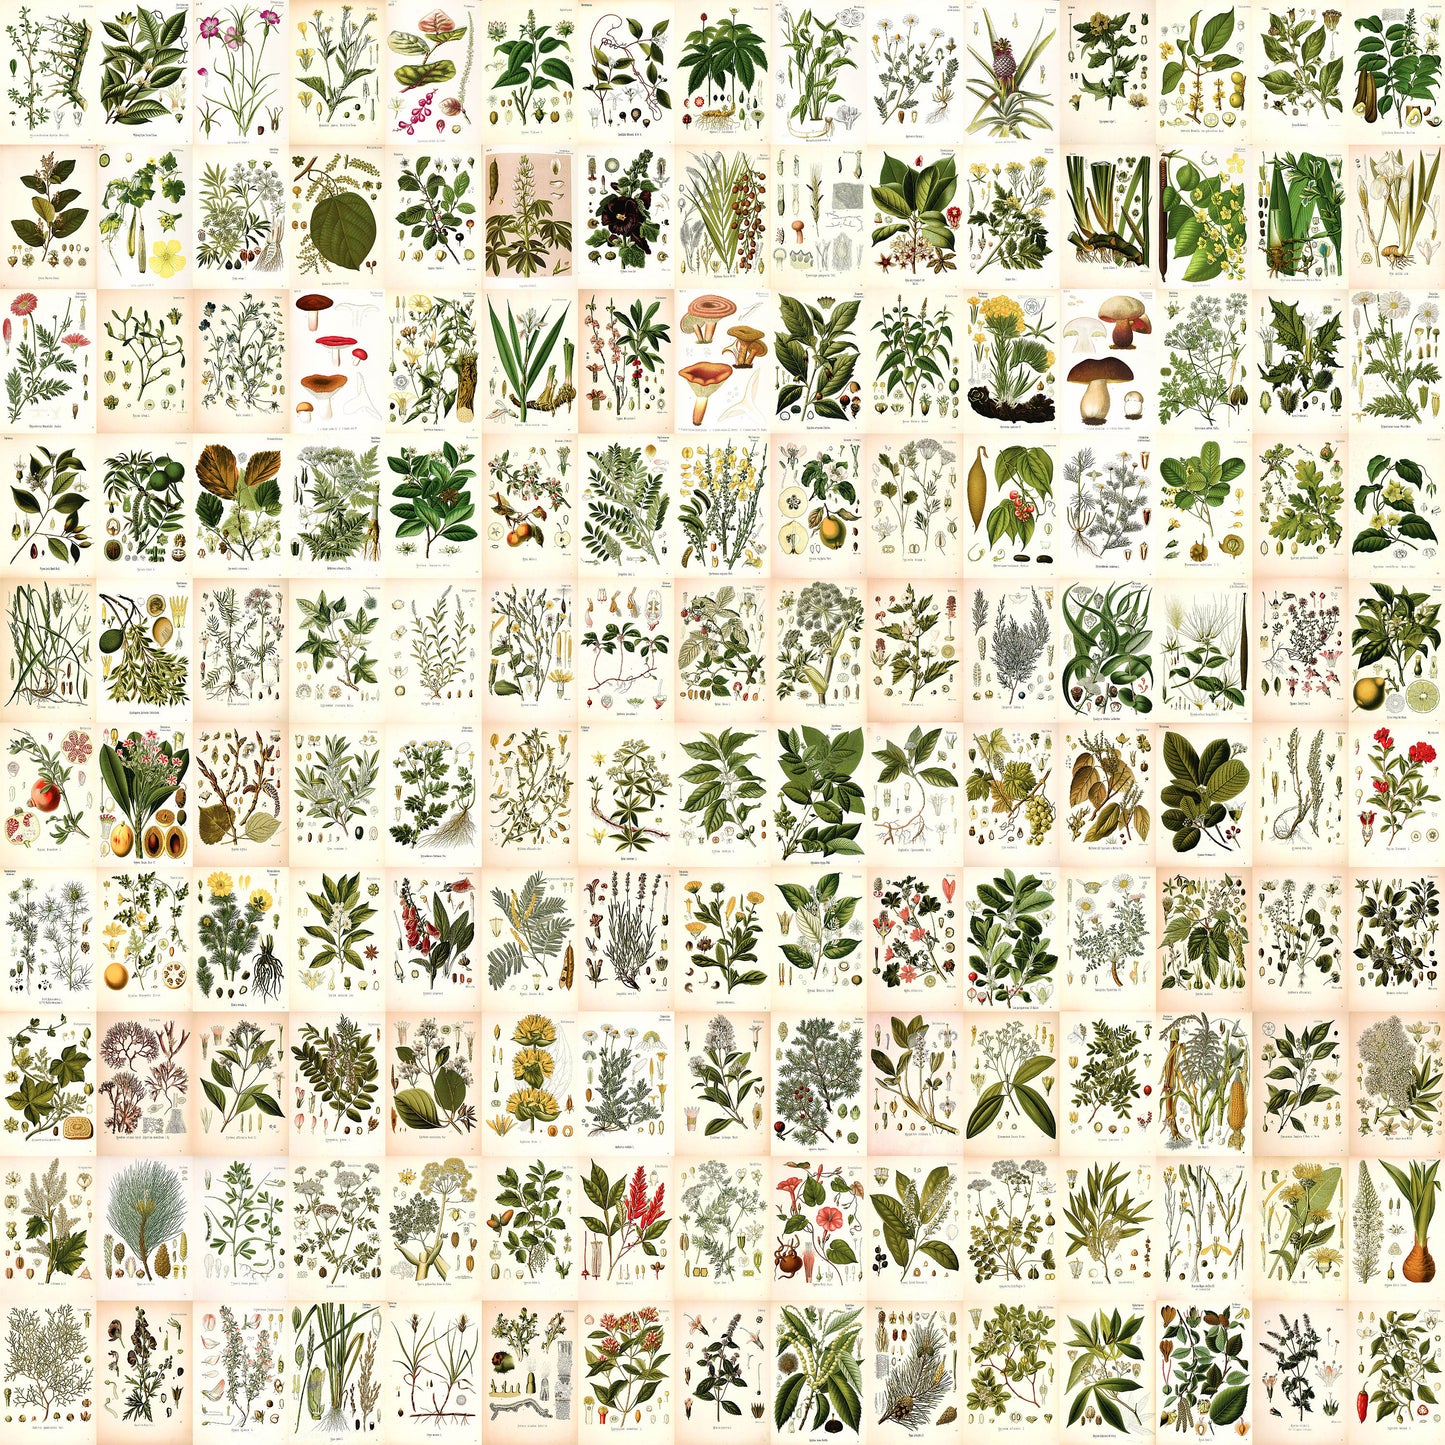 Kohler's Medicinal Plants 4"x6" Collage Kit Set 2 [151 Images]